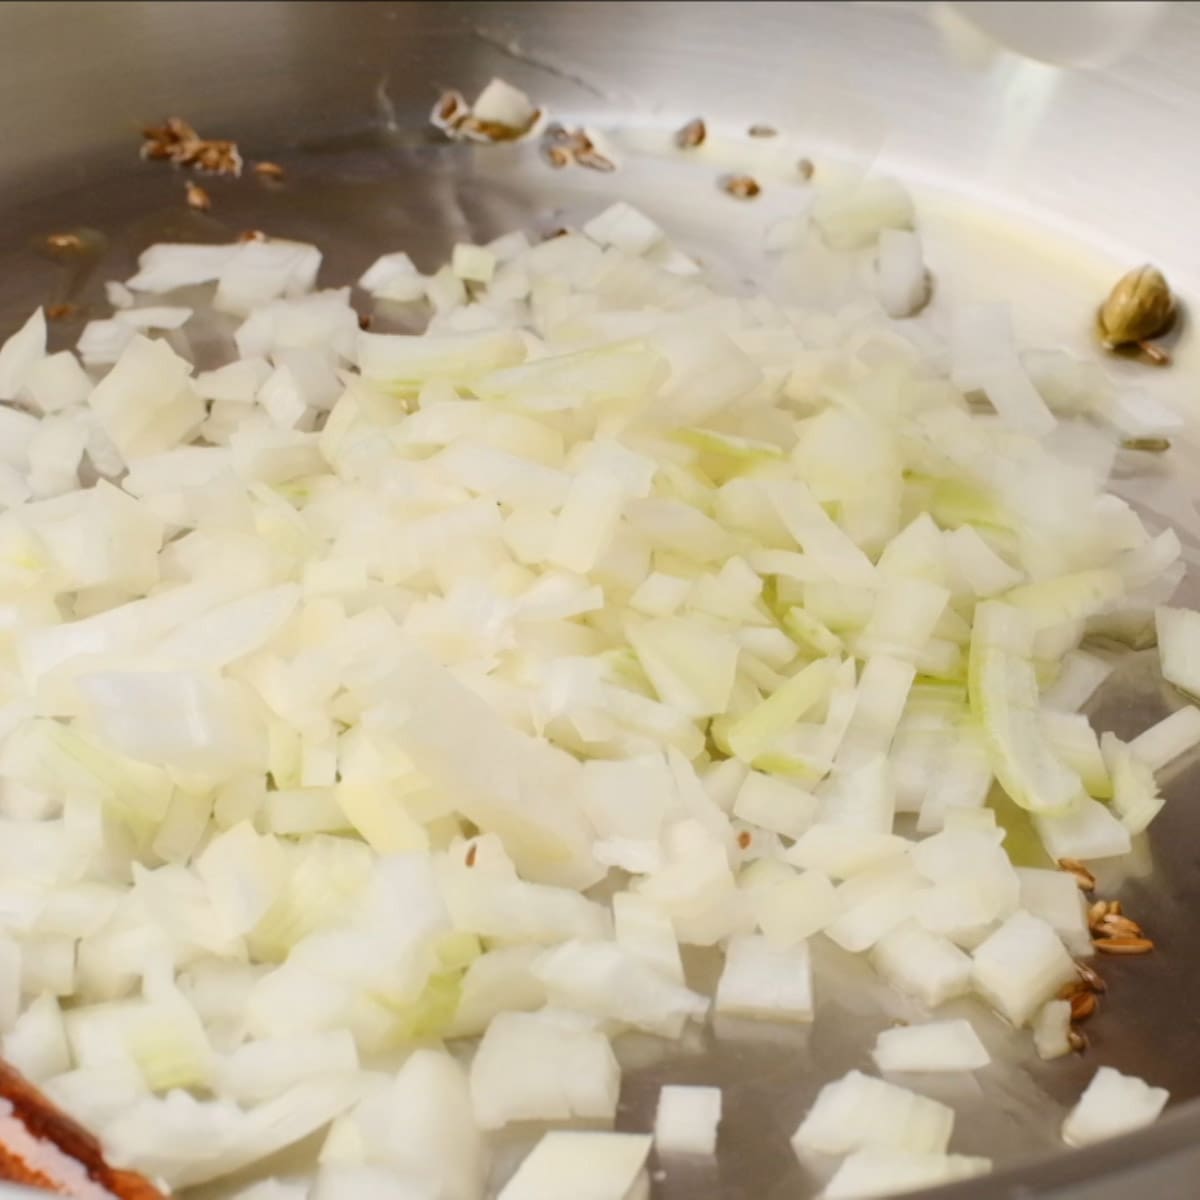 saute onion until translucent